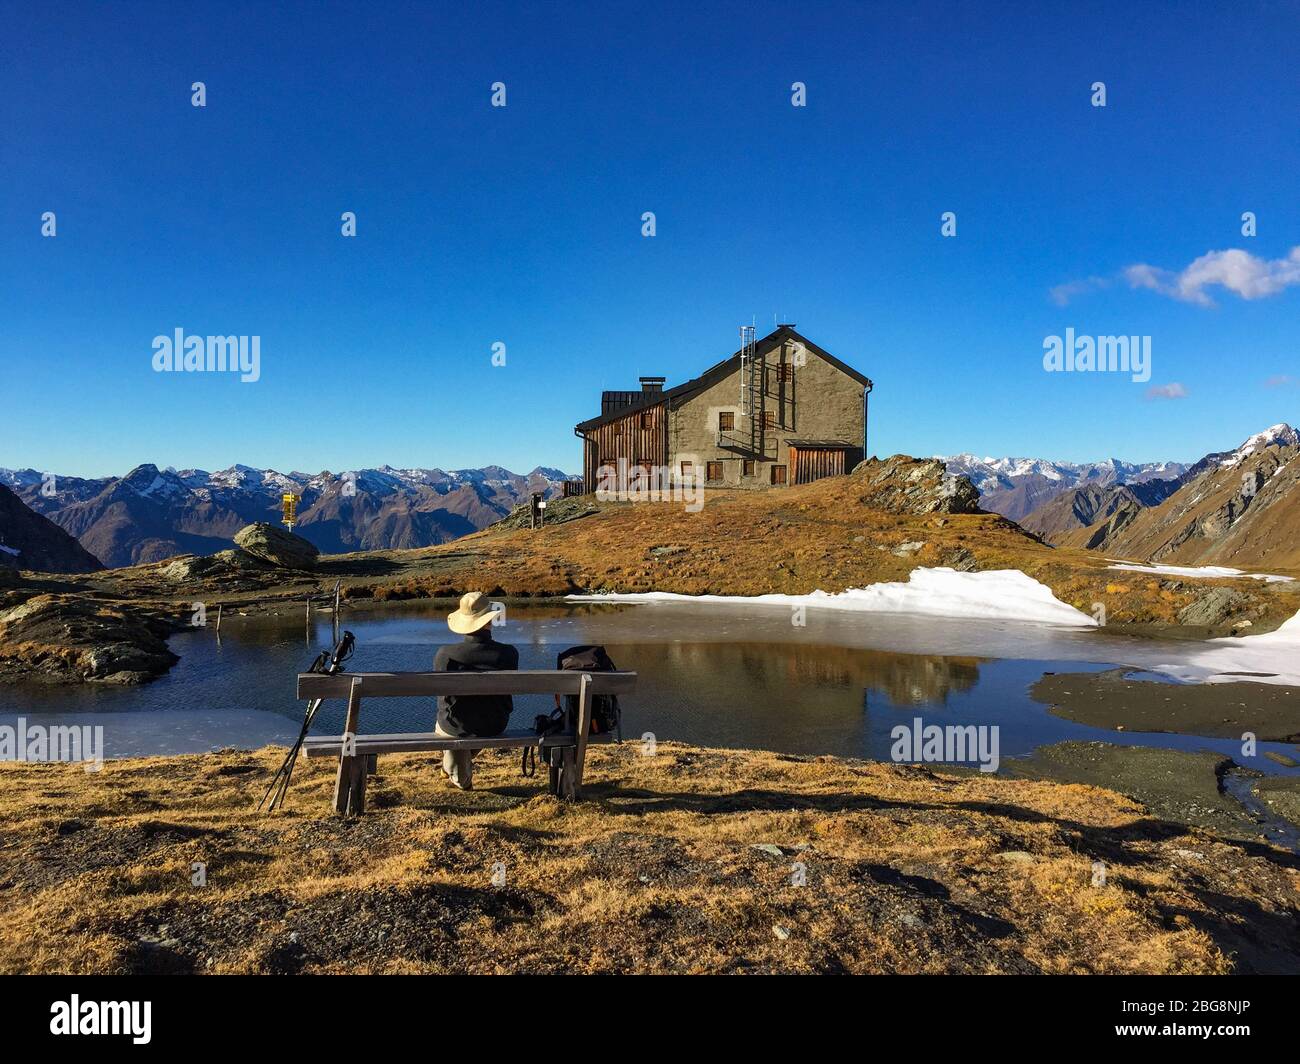 Excursionista descansando en la choza de Sudetendeutsche, refugio en lo alto de los alpes sobre Matrei en Osttirol, Tirol del este, Austria, a finales de otoño Foto de stock